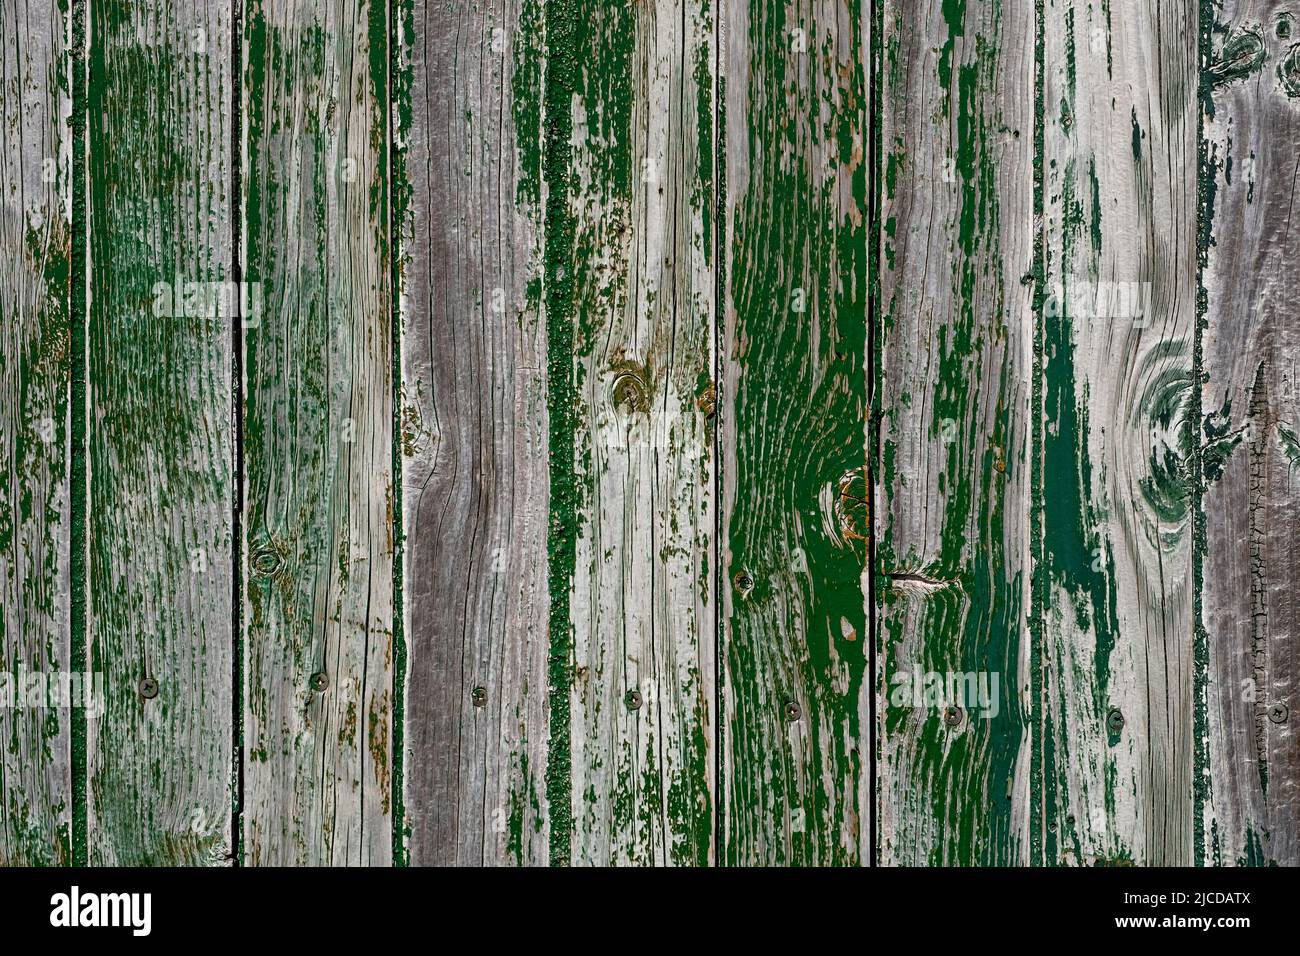 Vieux mur en bois vieilli avec peinture verte écaillée usée, fond en bois de grunge Banque D'Images